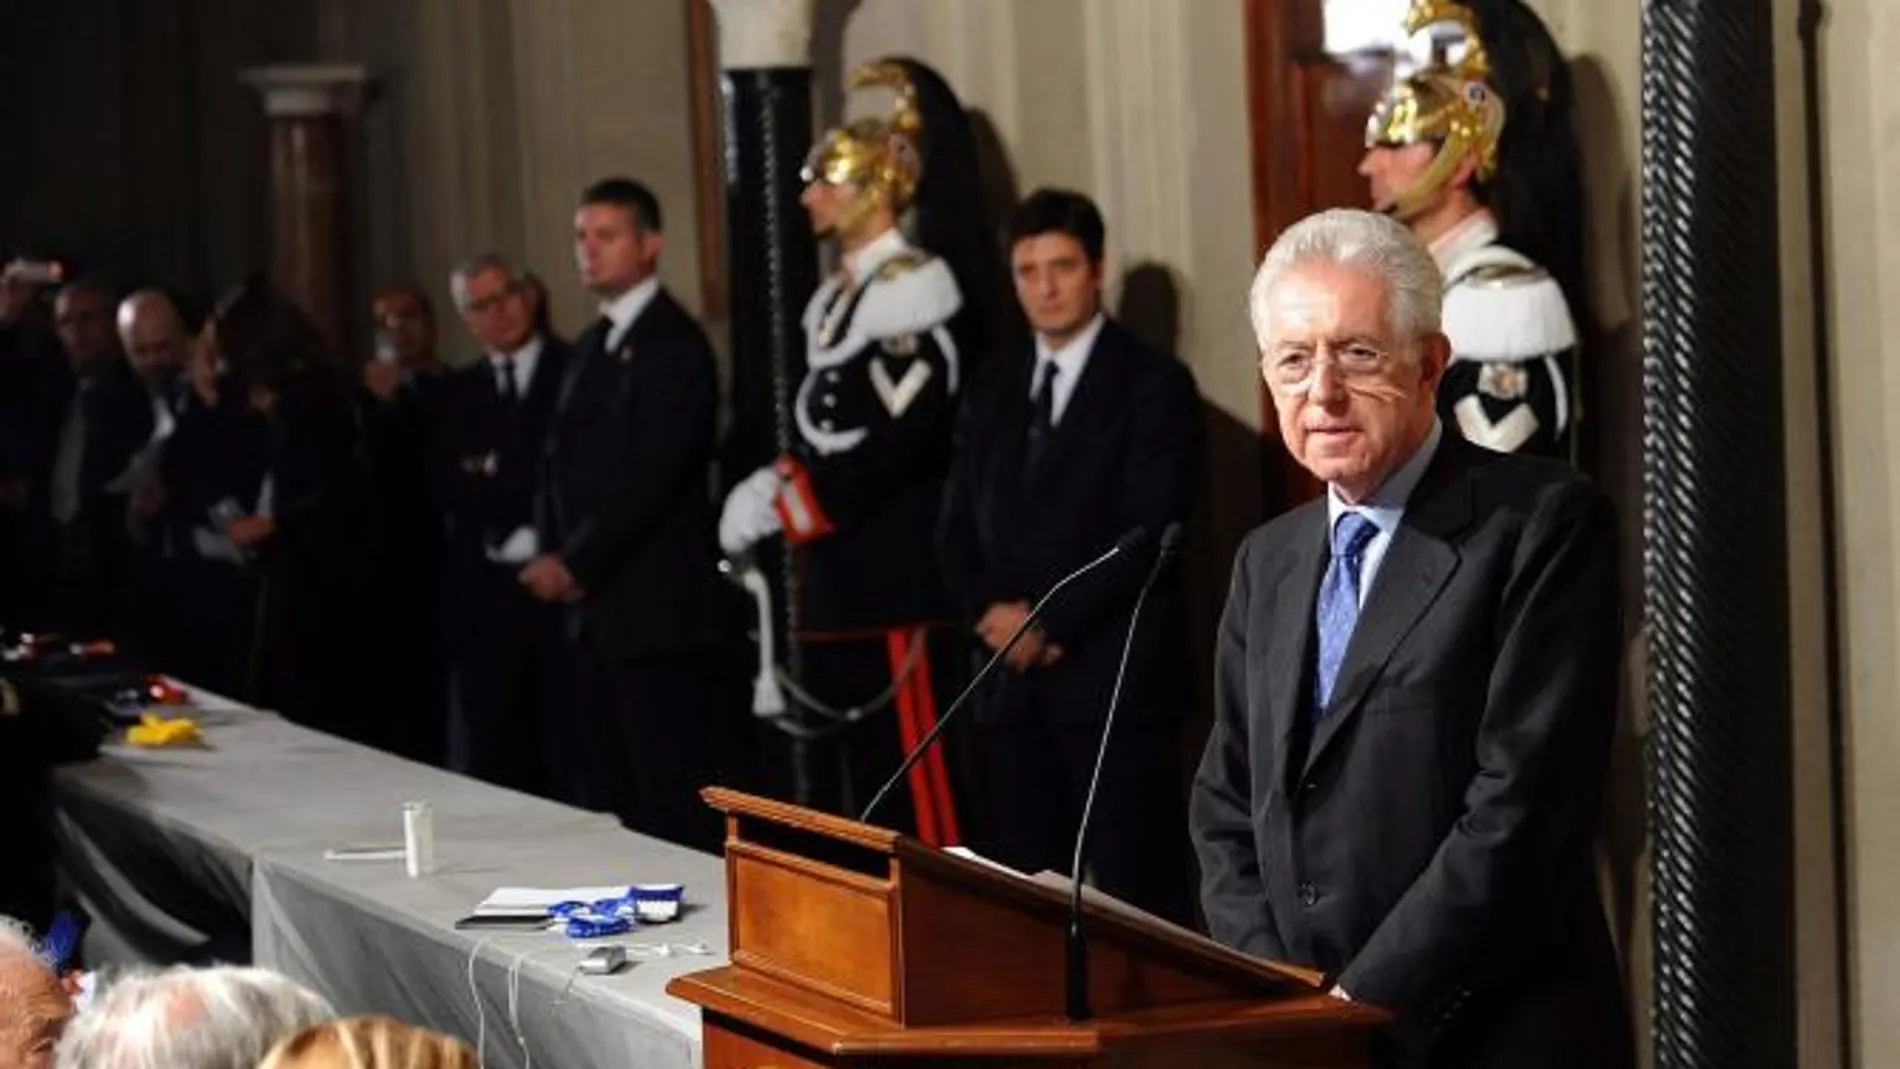 Monti comienza la ronda de consultas antes de formar Gobierno